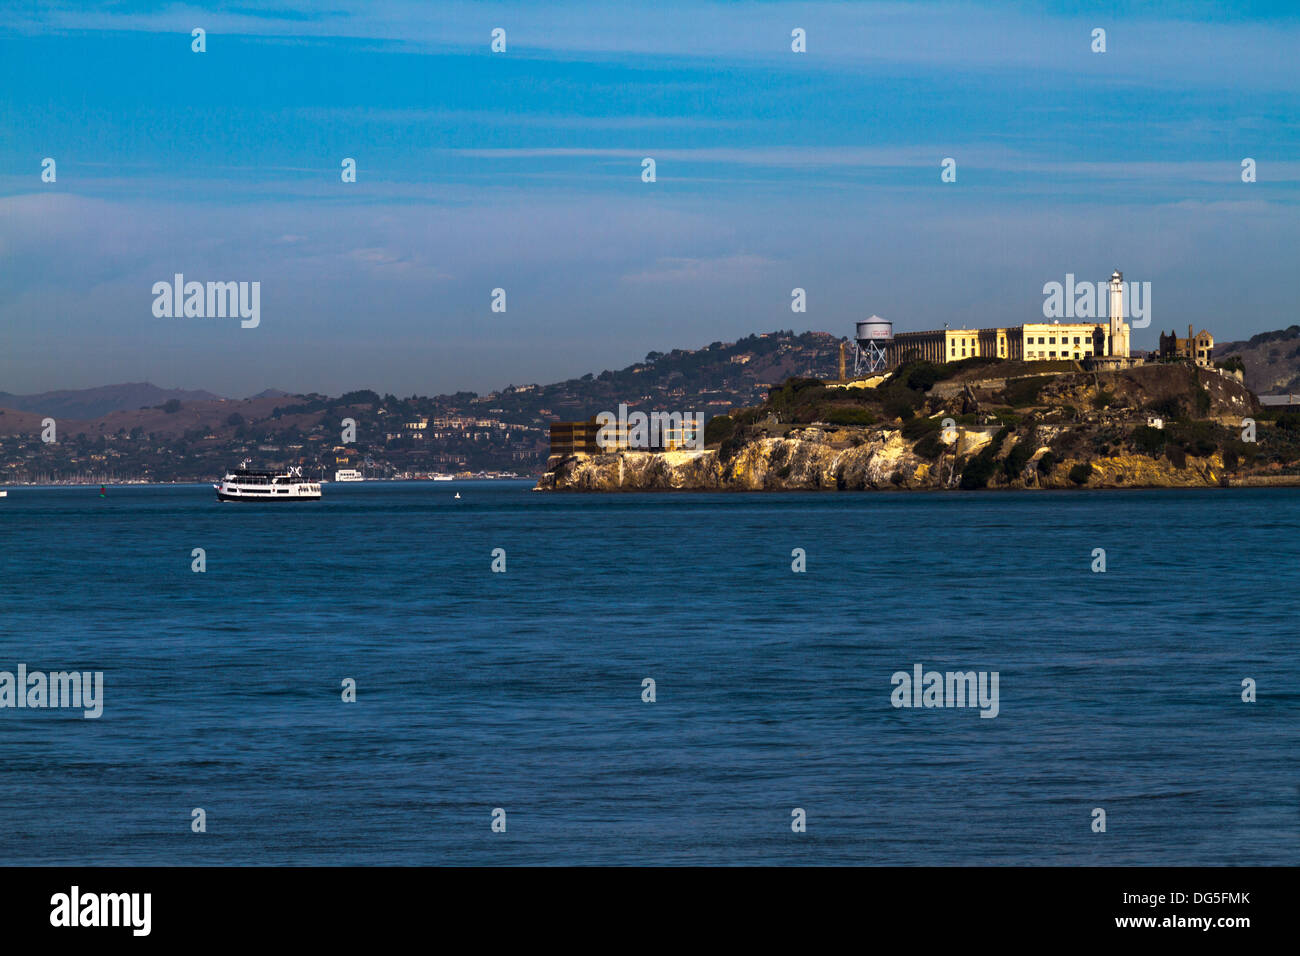 Vista de la Isla de Alcatraz, prisión y ferry visto desde la bahía de San Francisco. Foto de stock